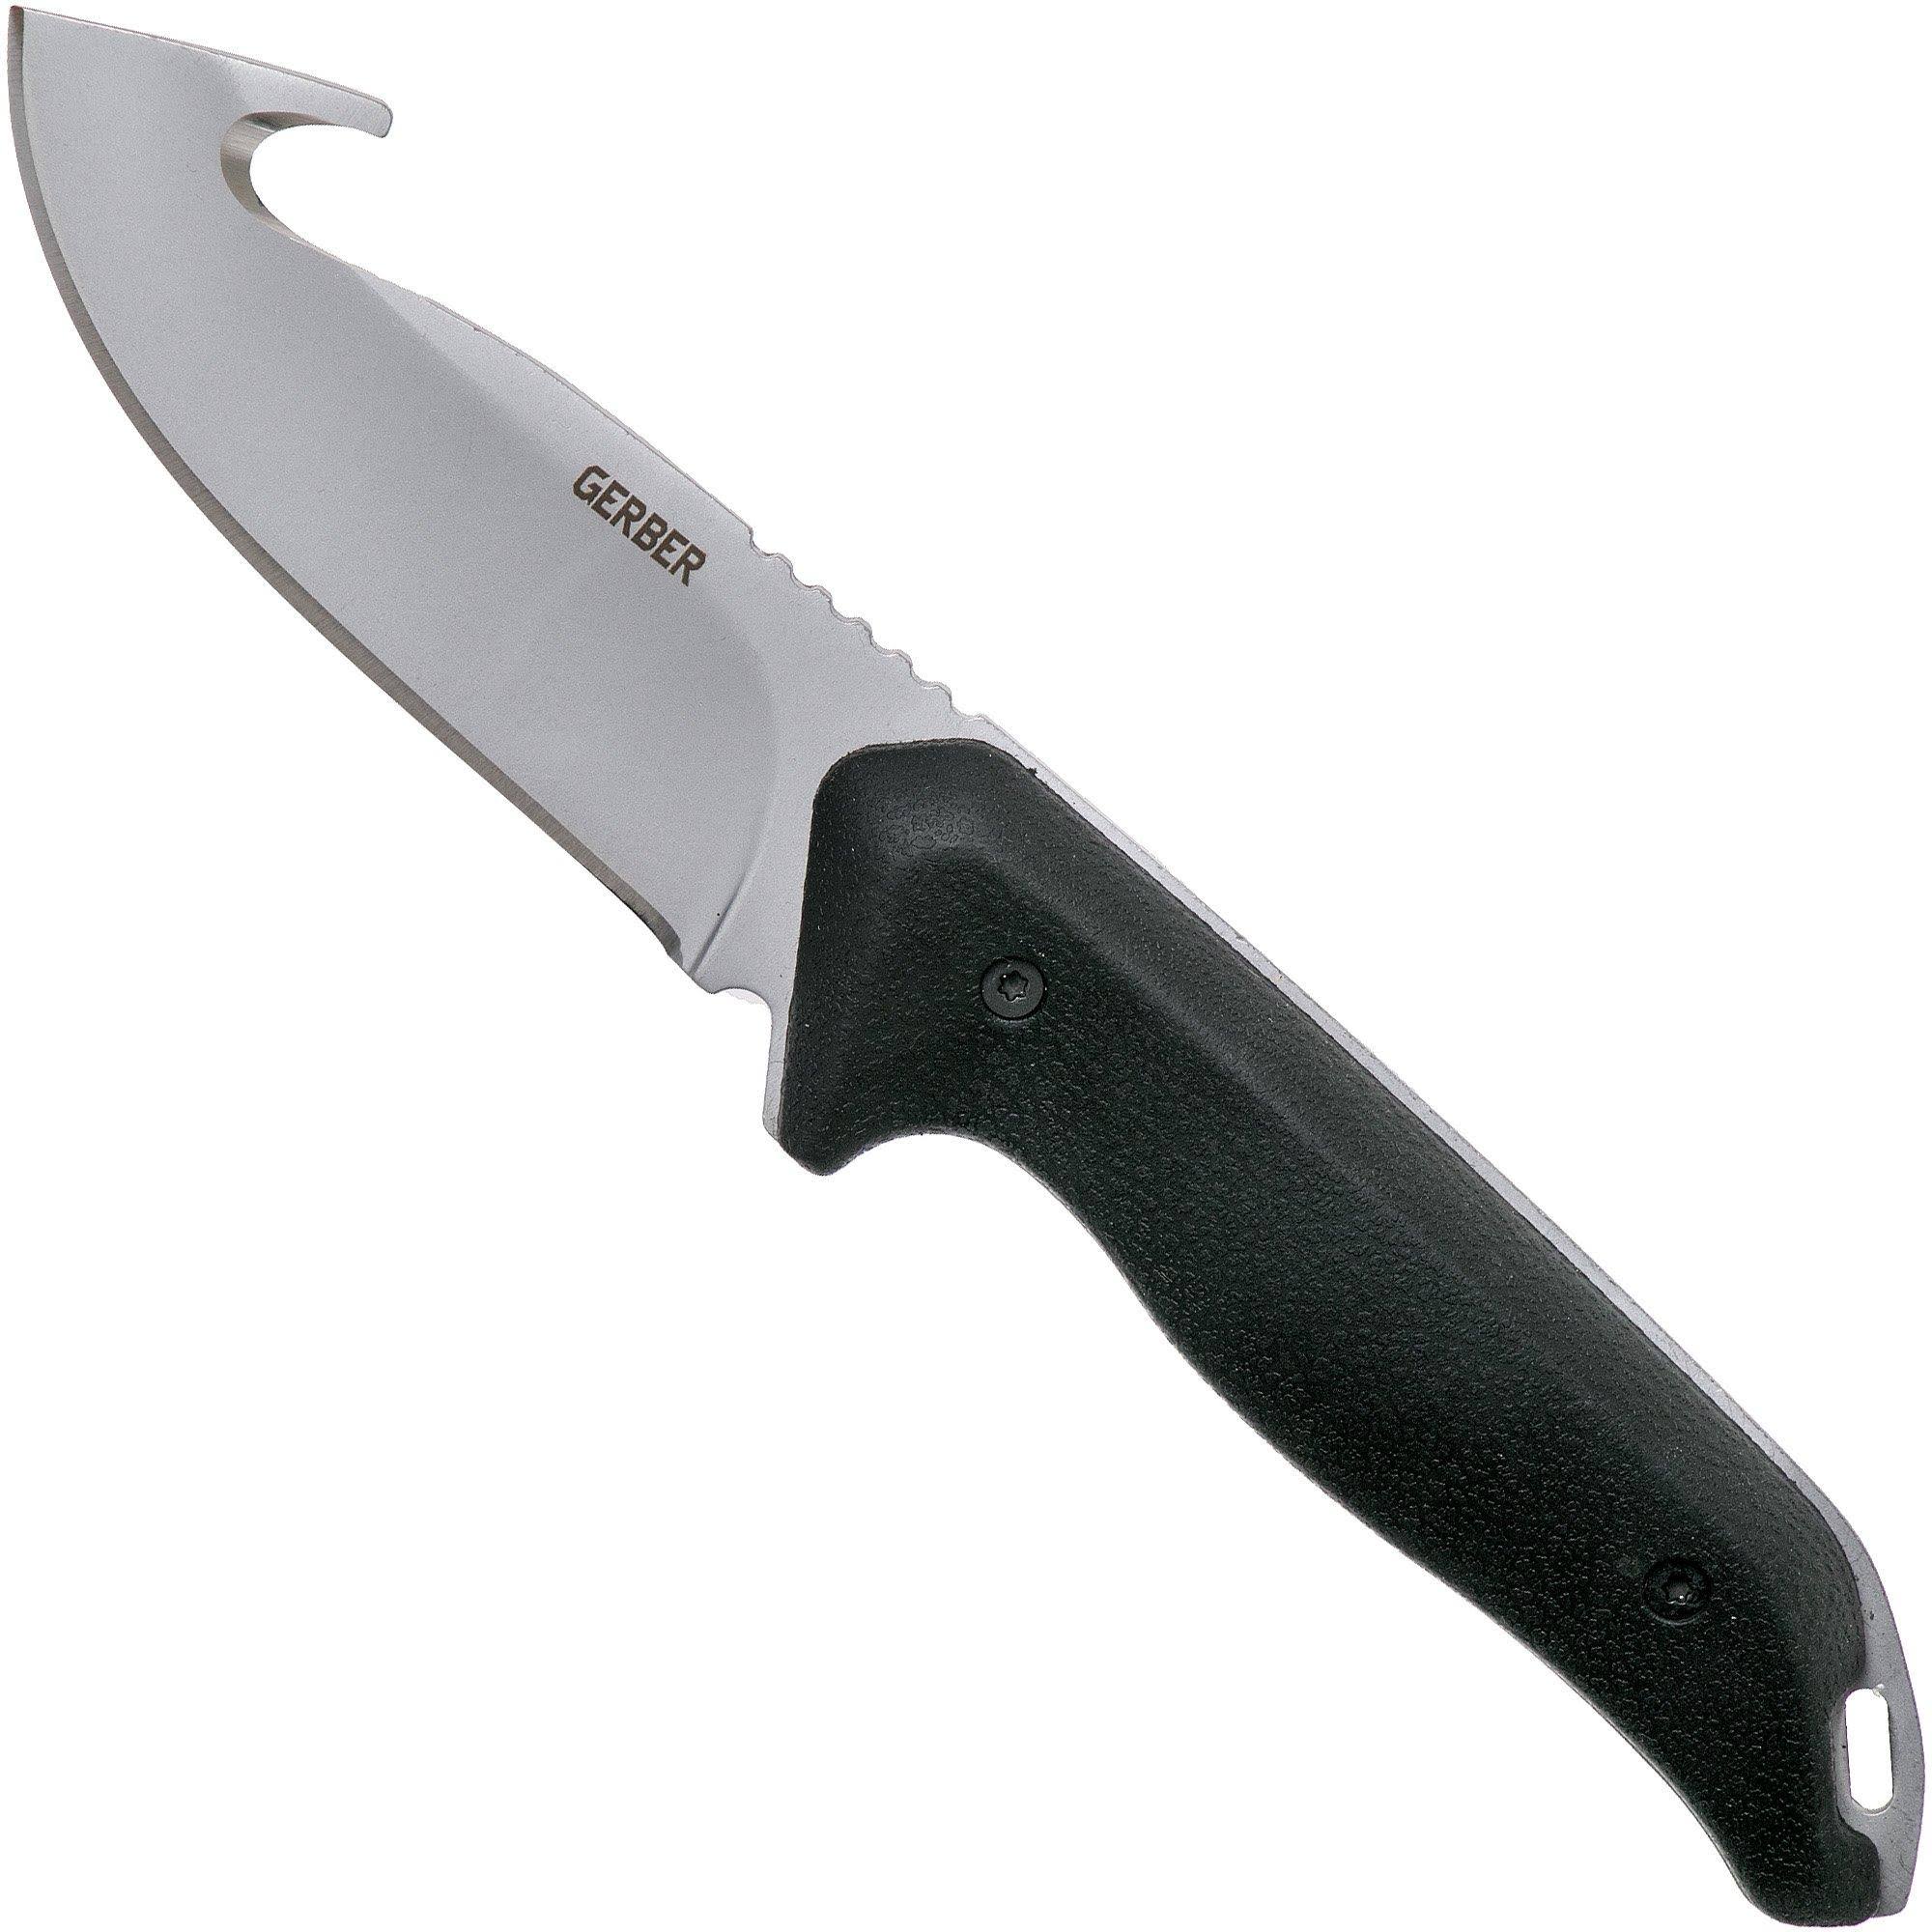 Gerber Moment Fixed Gut Hook Blade Knife - 3.5"